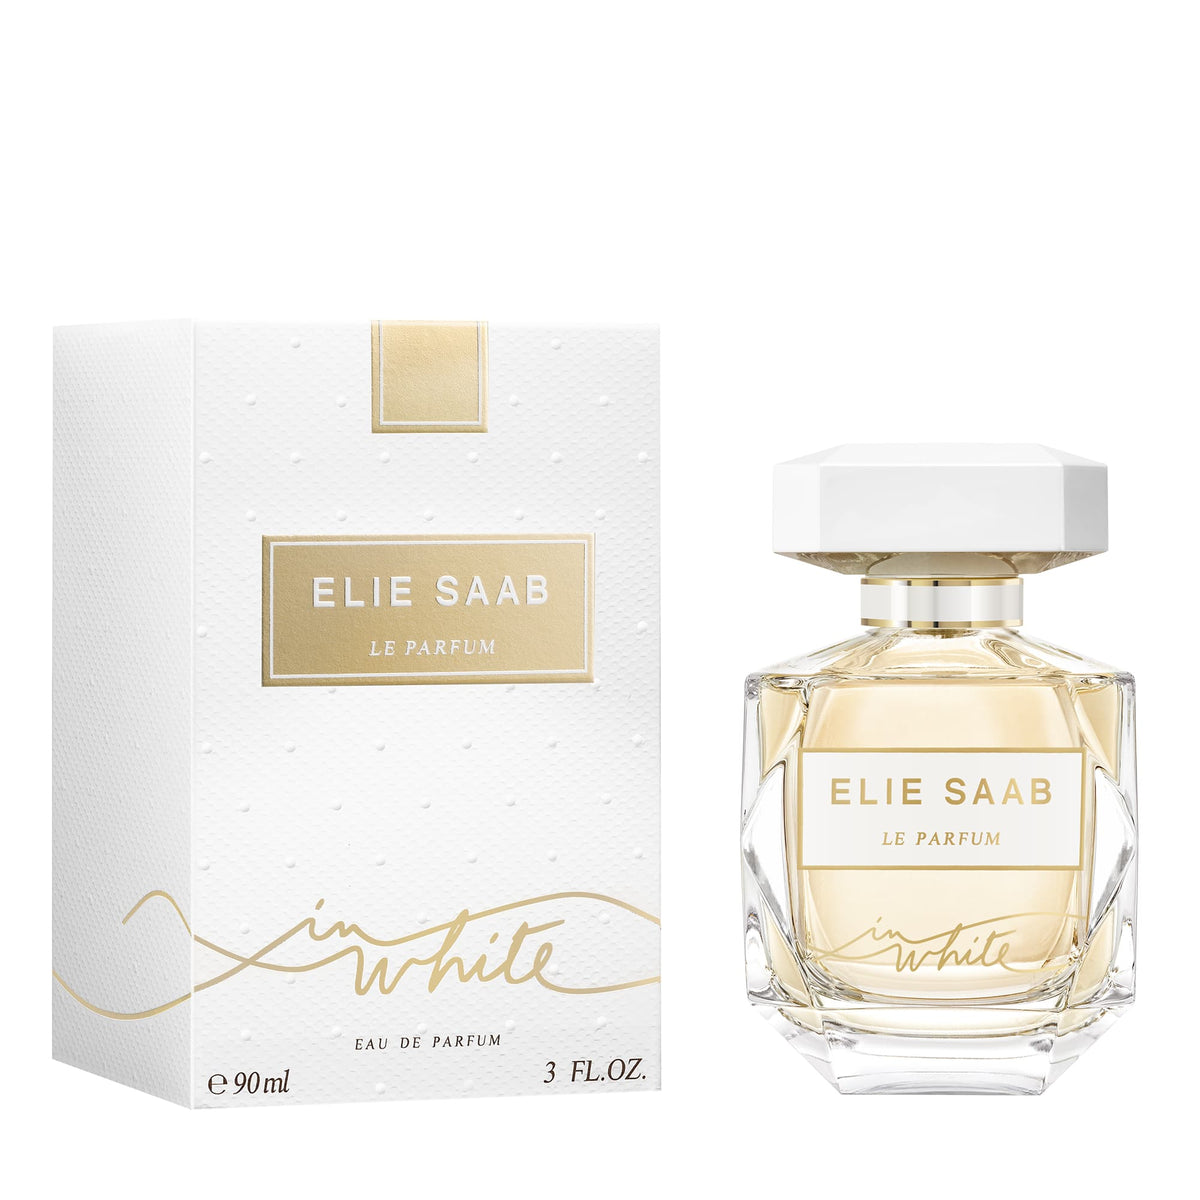 Elie Saab Le Parfum White Eau de Parfum (90ml) Elie Saab